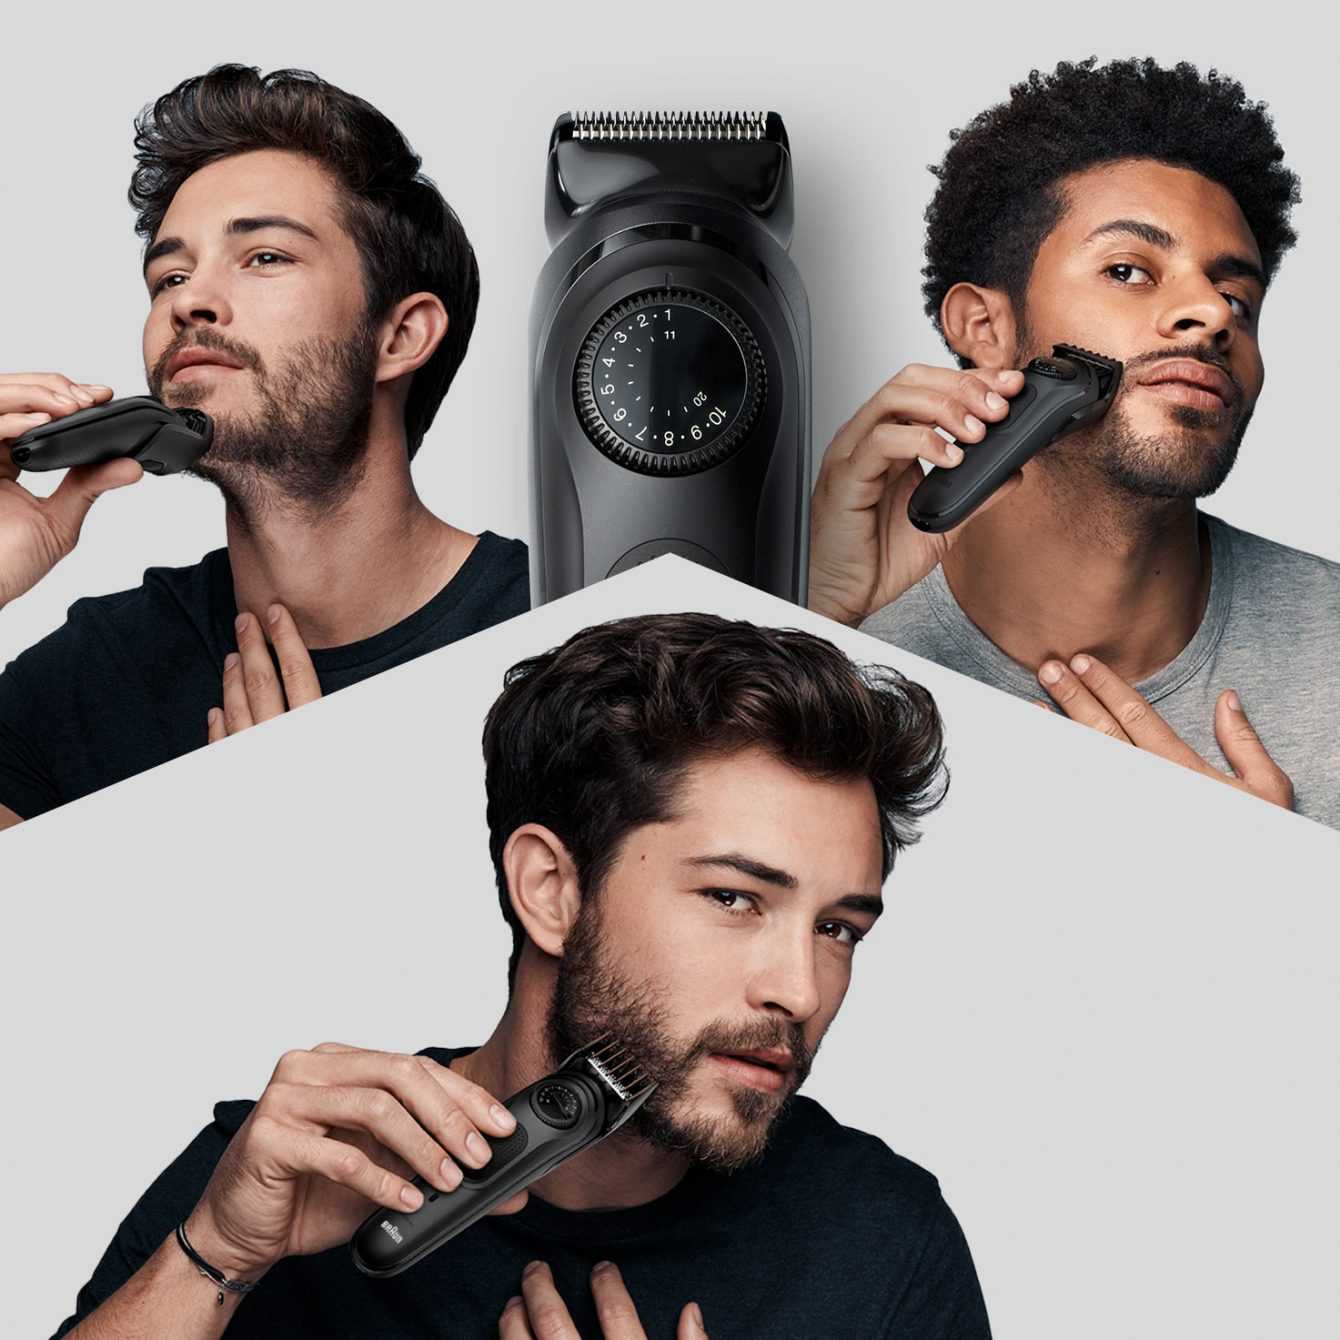 Braun Beard Trimmer 7 review: a flawless beard trimmer